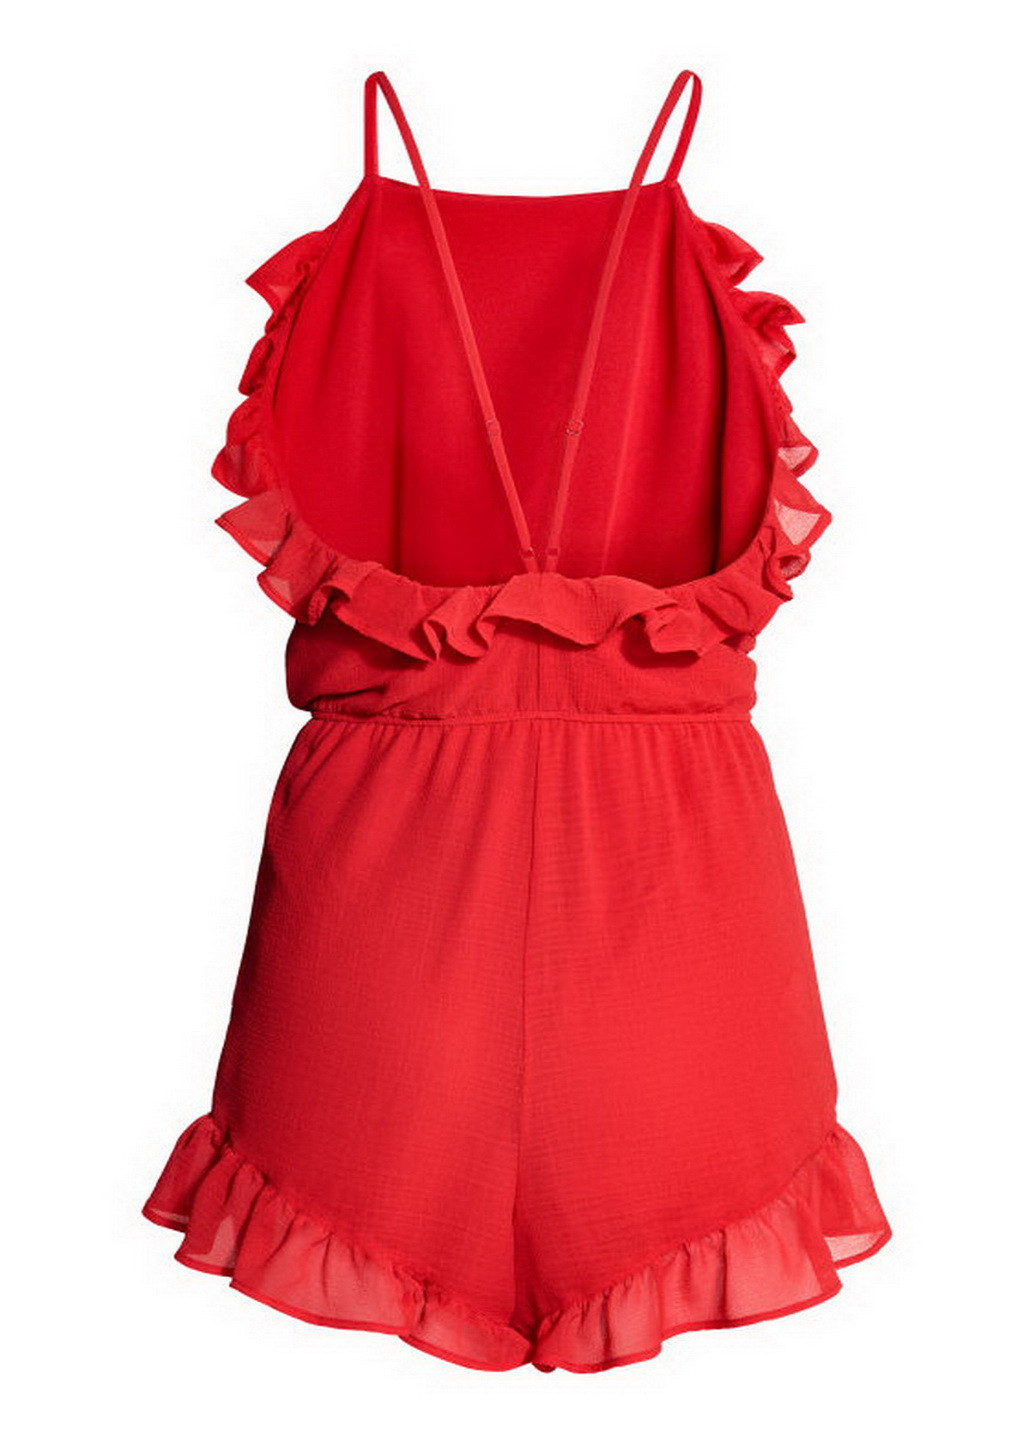 Комбинезон H&M комбинезон-шорты однотонный красный кэжуал полиэстер